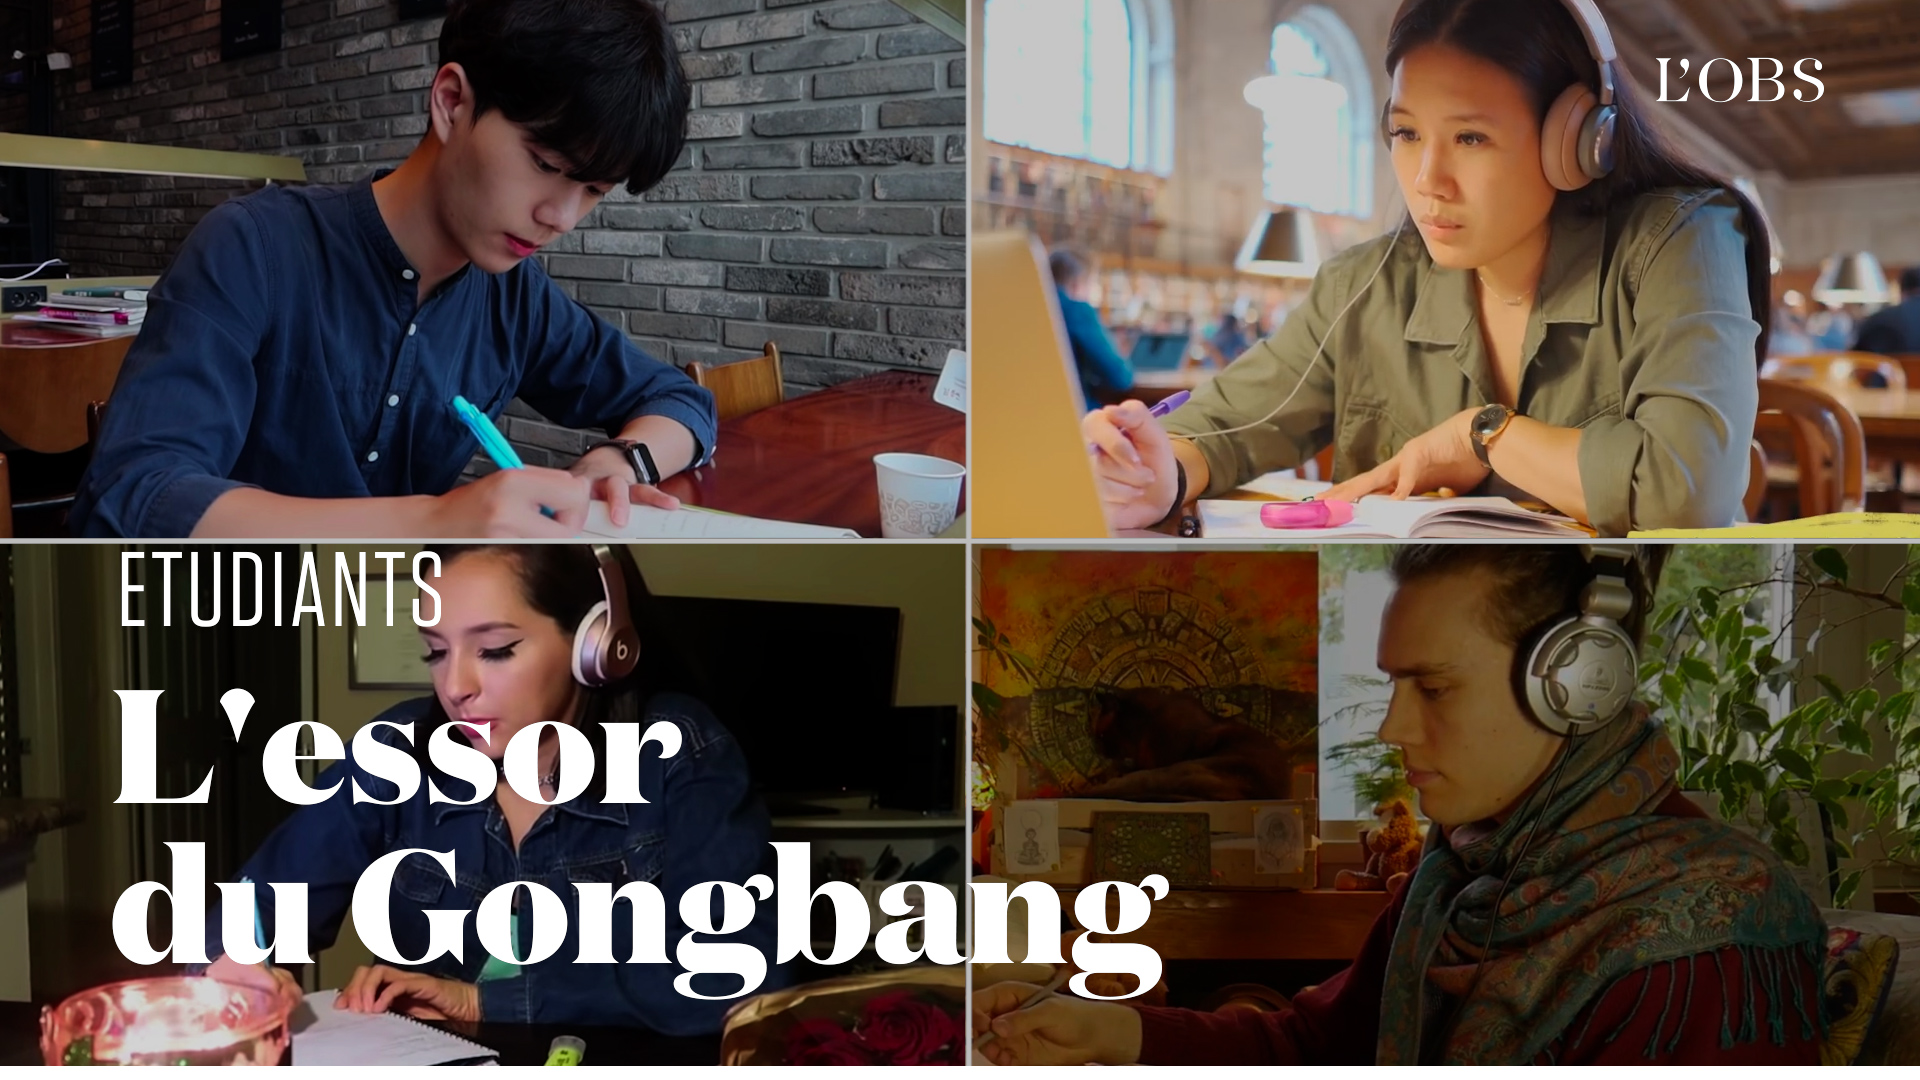 Le "gongbang" pour lutter contre la solitude pendant les révisions